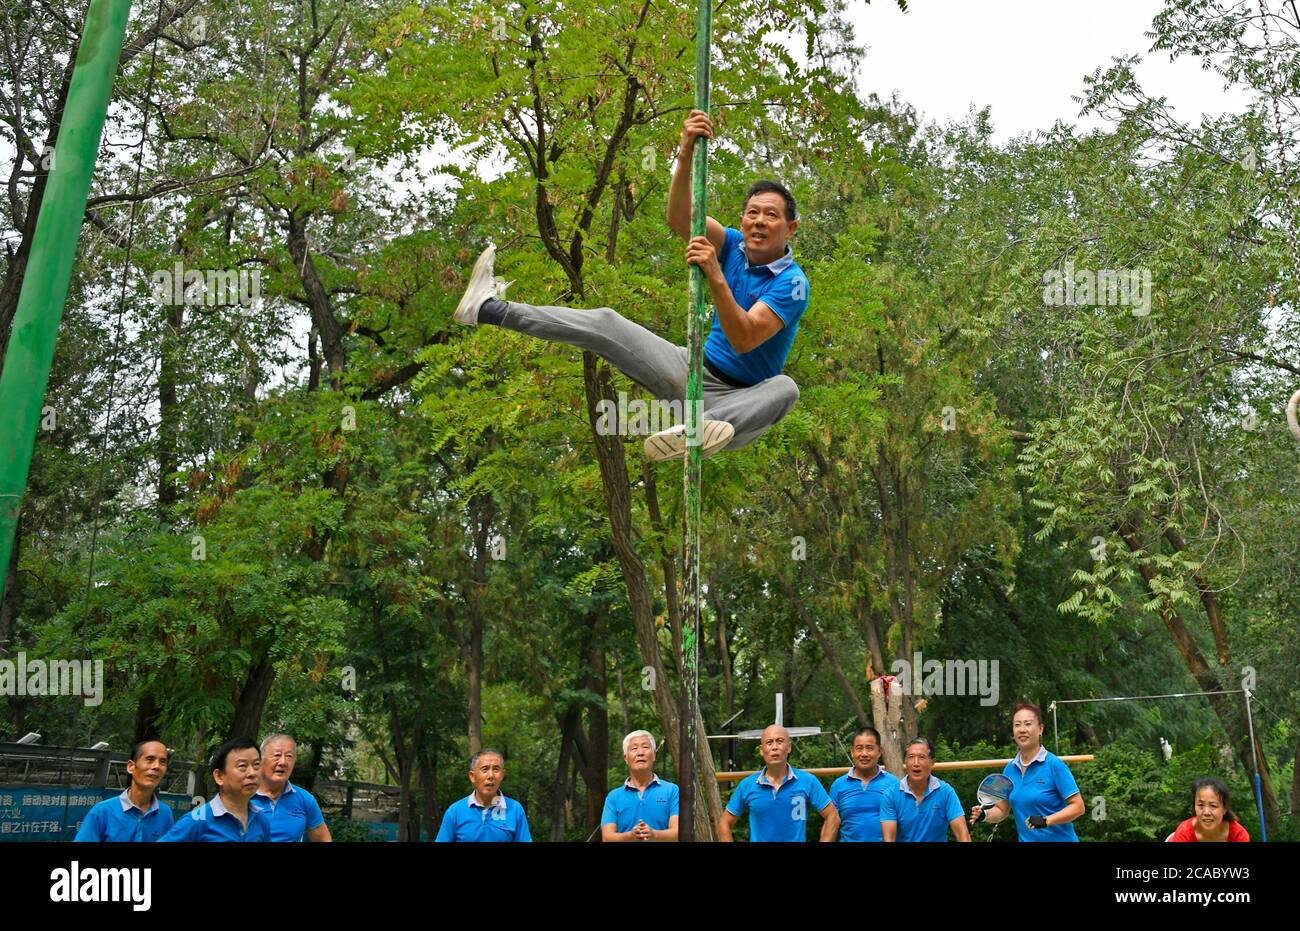 (200806) -- TIANJIN, le 6 août 2020 (Xinhua) -- Liu Yuanzhu, 62 ans, pratique l'escalade dans le parc Xigu, dans le nord de la Chine, Tianjin, le 4 août 2020. Un groupe de personnes âgées a formé une équipe de gymnastique à Tianjin il y a dix ans. Ils ont pratiqué régulièrement comme exercice physique quotidien. L'équipe compte maintenant plus de 20 membres, avec une moyenne d'âge de 68 ans. « l'exercice nous permet de maintenir un bon état physique, ce qui est très utile pour améliorer la qualité de vie. » a déclaré Tong Yugen, le chef d'équipe âgé de 66 ans. Au fur et à mesure que l'équipe devient plus connue, plus de 100 amateurs de fitness les ont rejoints dans l'exercice quotidien. ( Banque D'Images